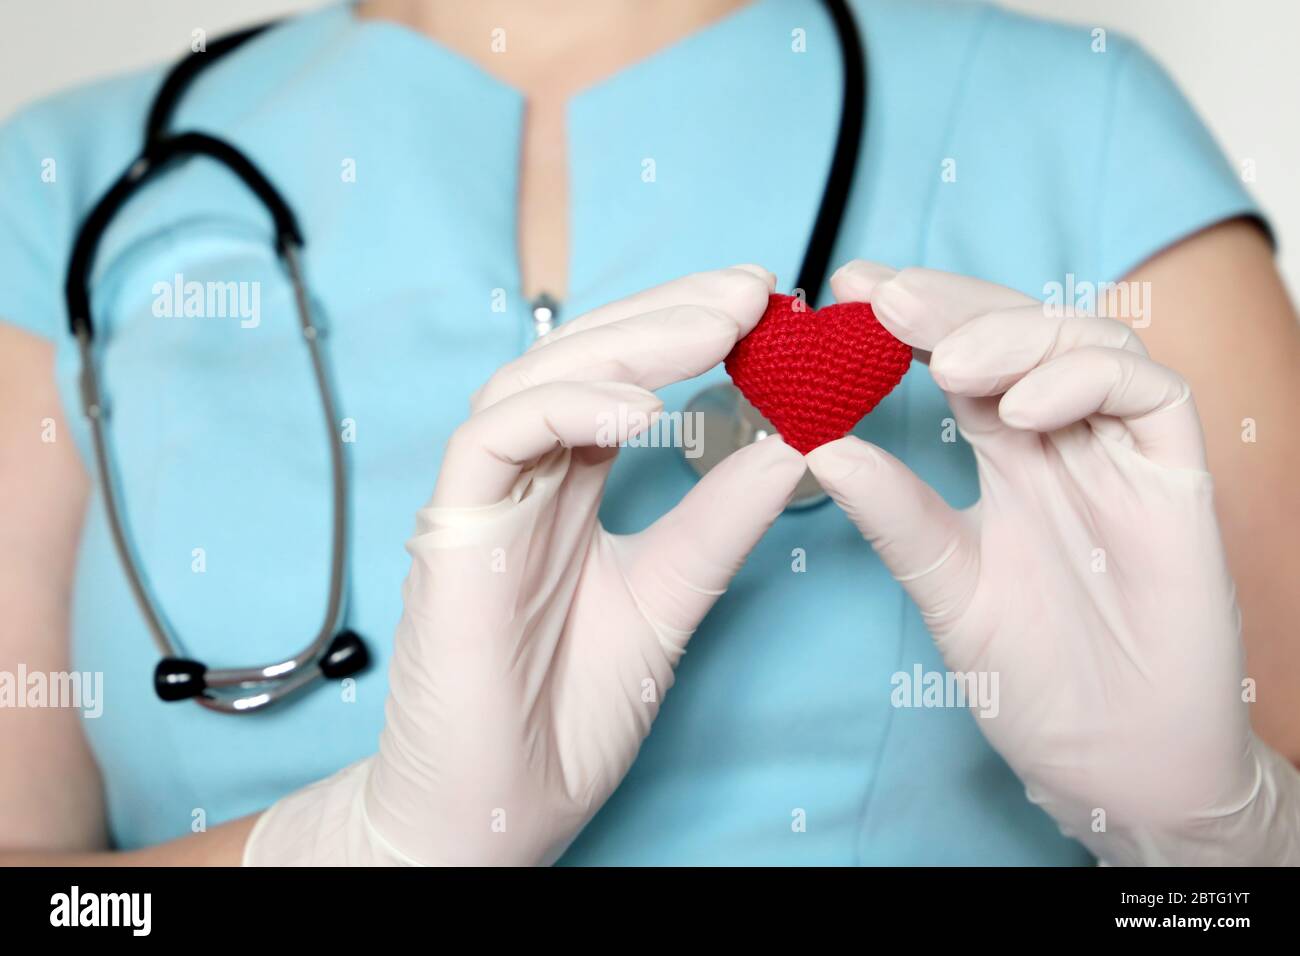 Frau Ärztin in medizinischer Maske, die rotes Strickherz in den Händen hält und während einer COVID-19-Coronavirus-Pandemie Leben rettet. Kardiologe, Blutspender Stockfoto